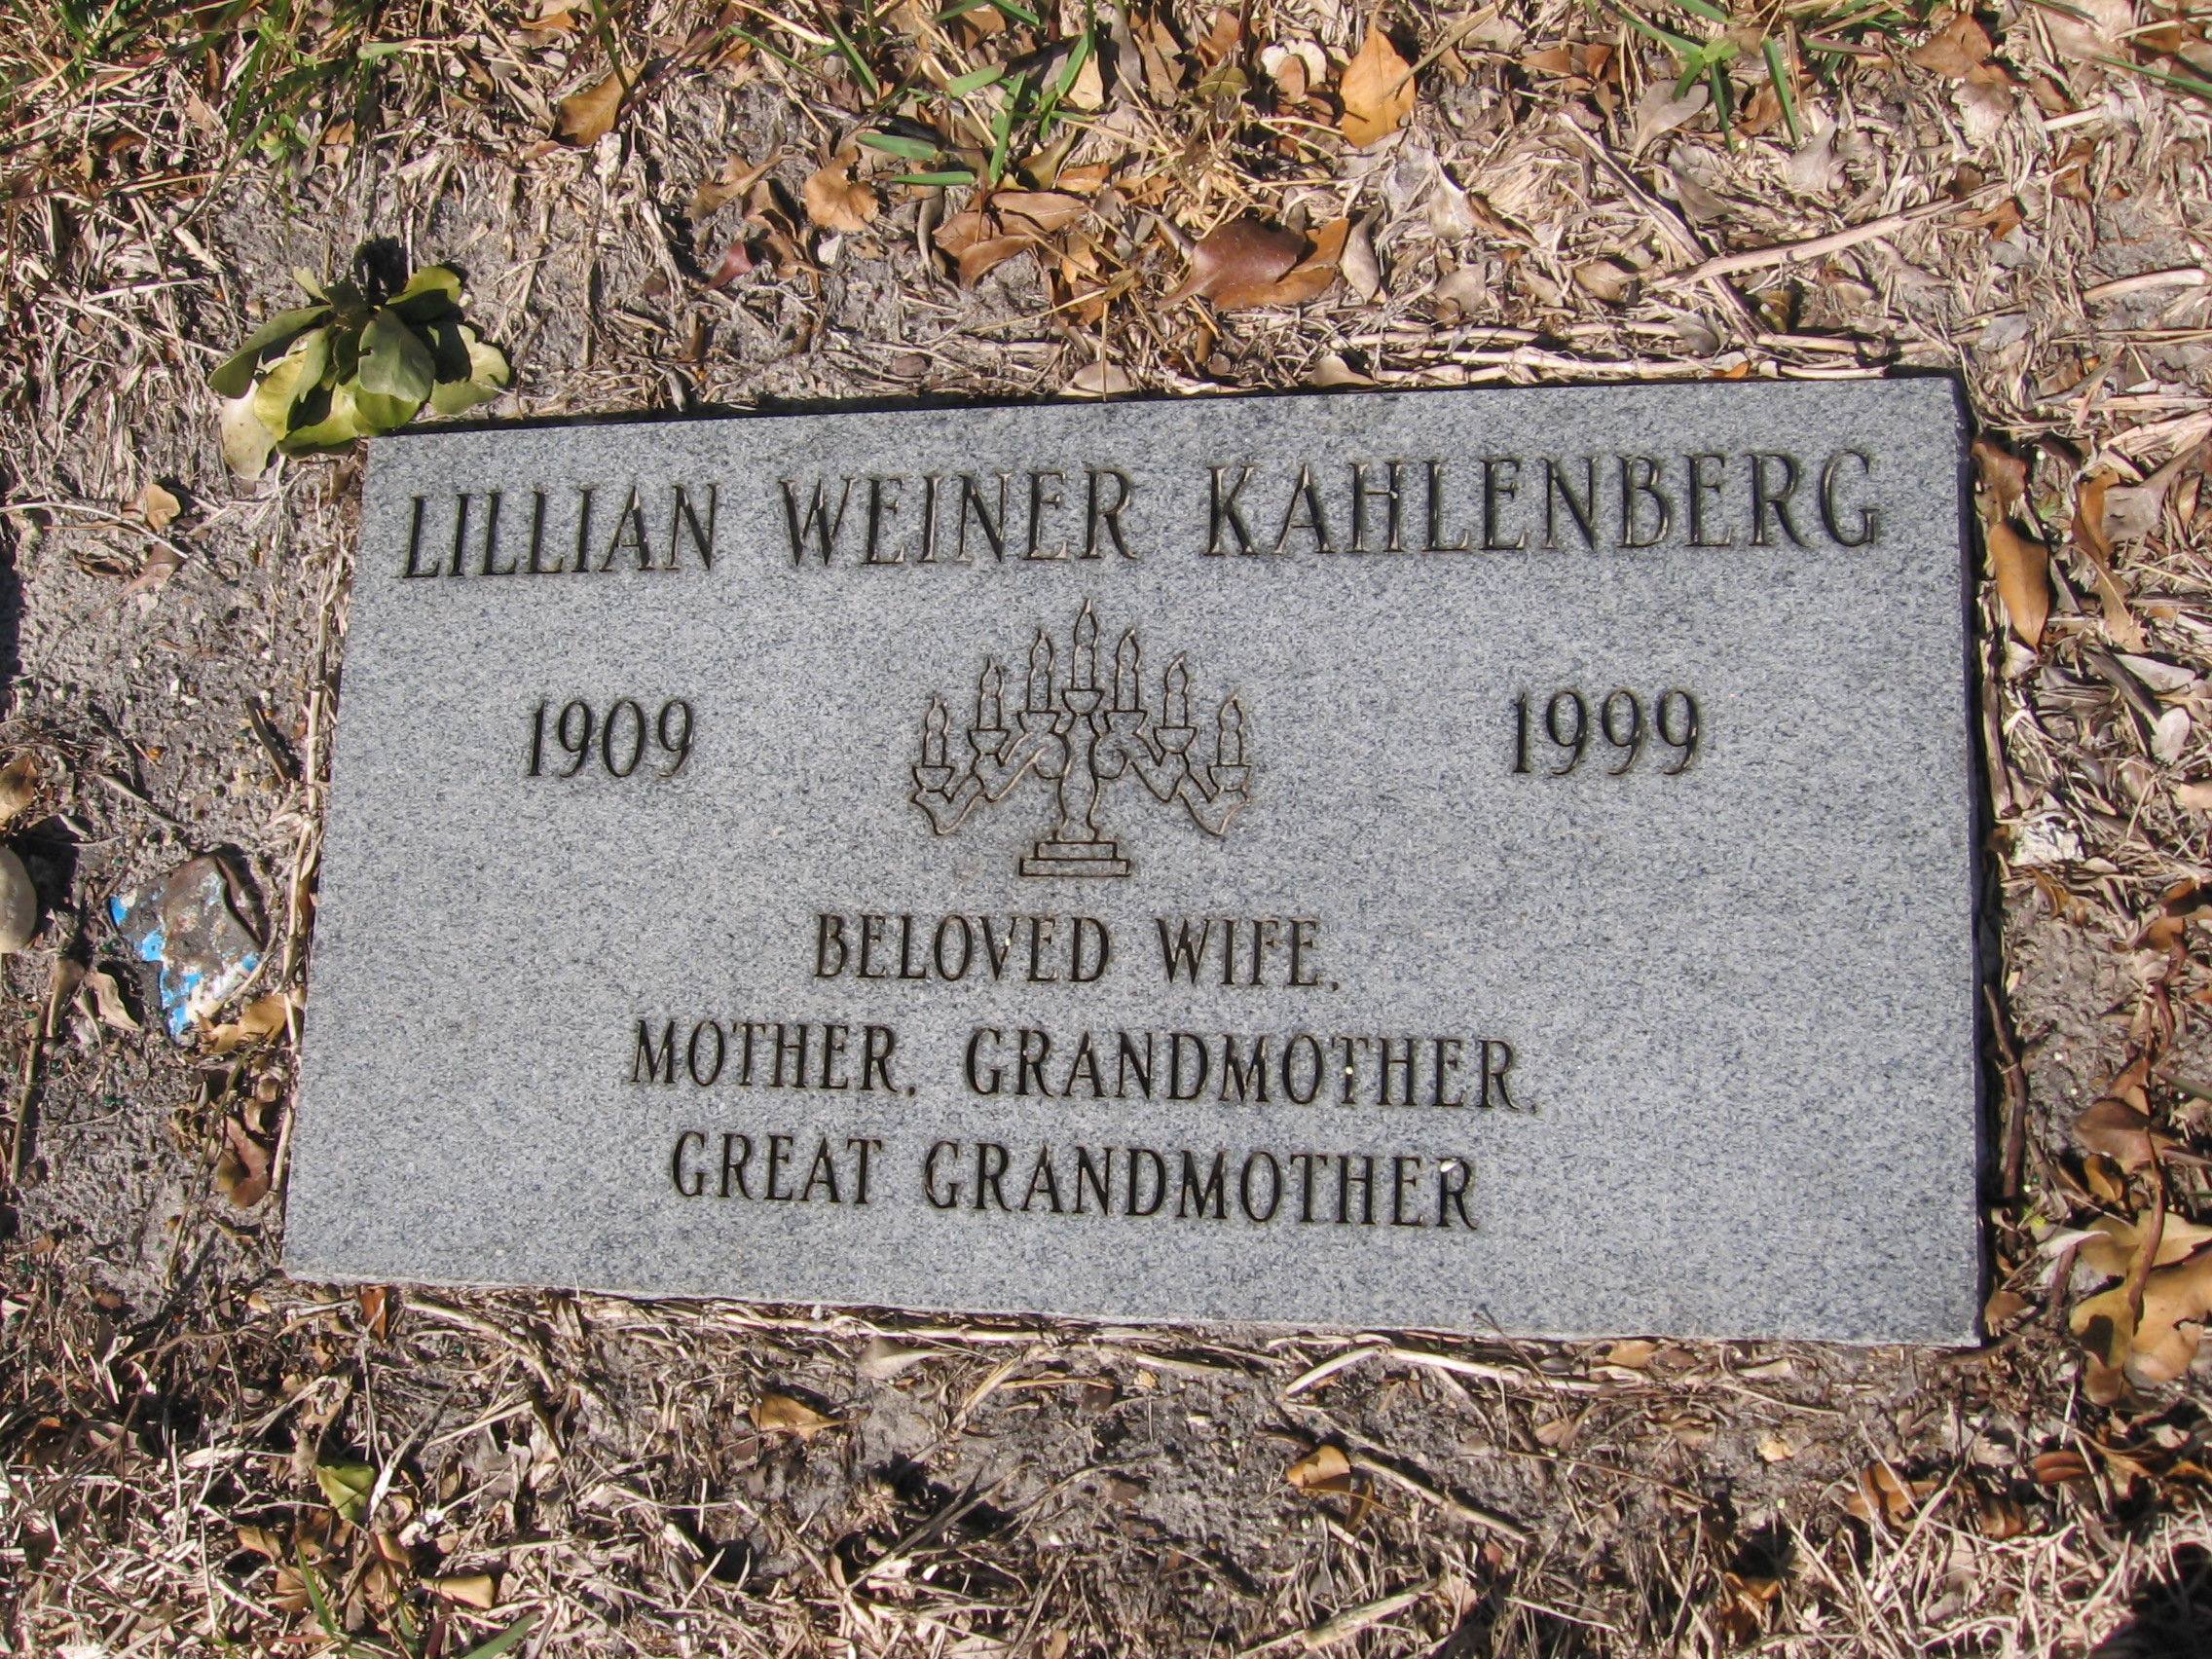 Lillian Weiner Kahlenberg